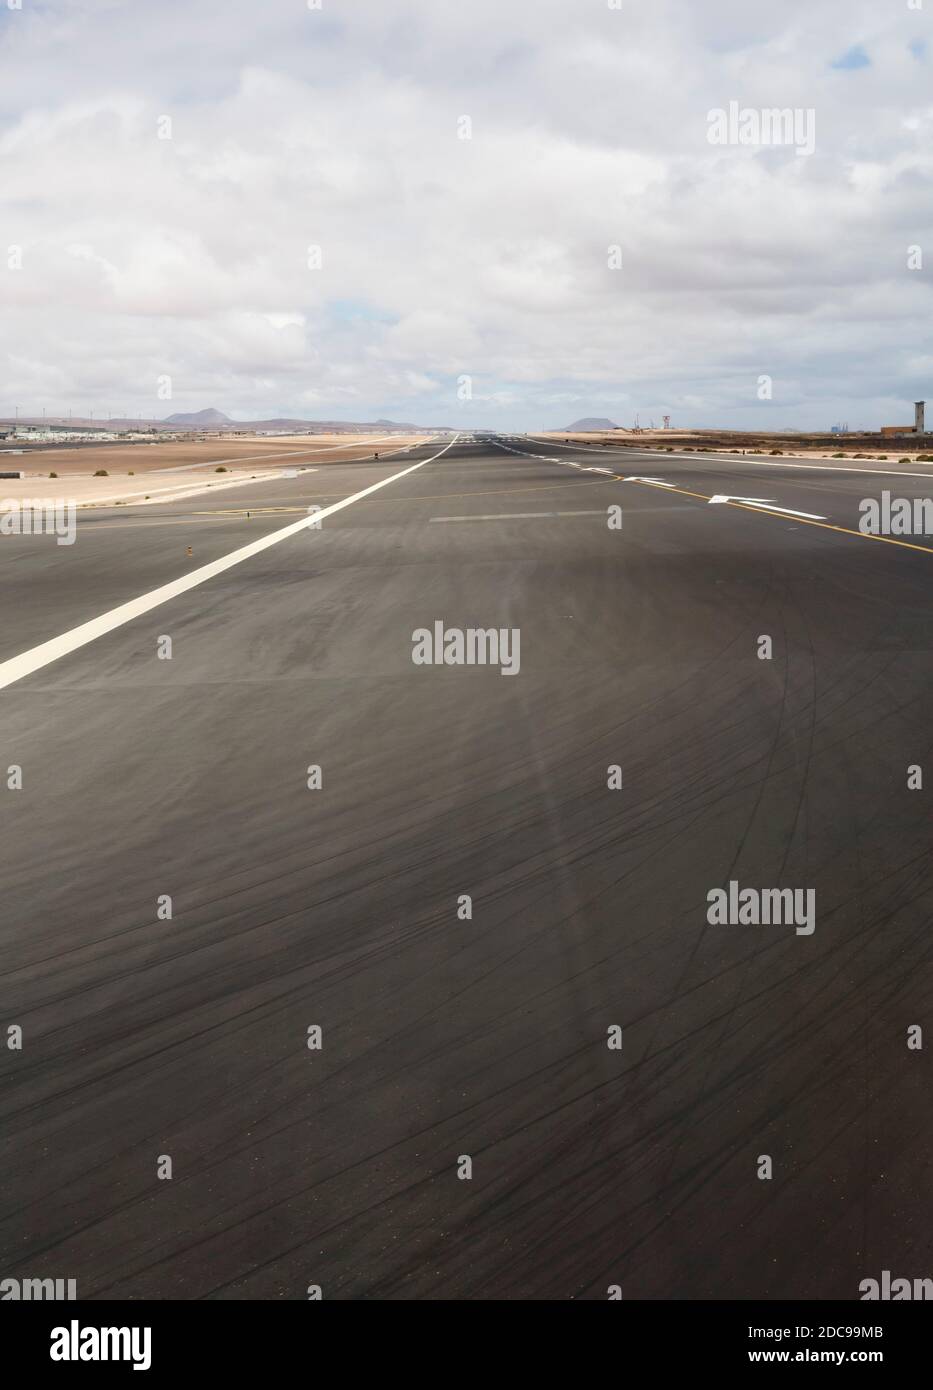 Nahaufnahme von Asphalt auf einer Landebahn, Flughafen Fuerteventura, Kanarische Inseln, Spanien Stockfoto